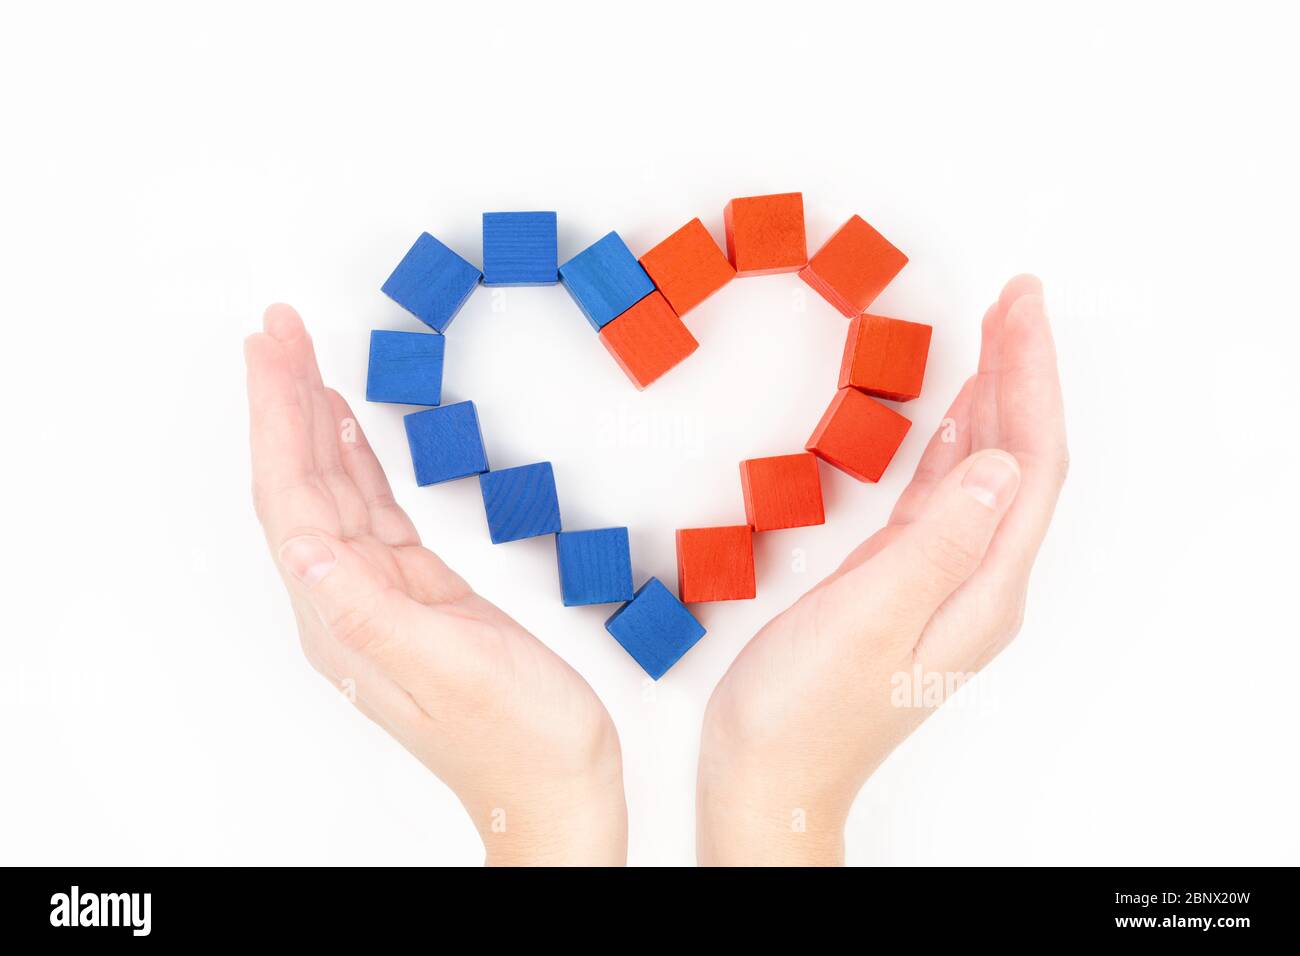 Vue rognée des mains de femmes près d'un arrangement en forme de coeur de petits blocs de bois rouges et bleus sur fond blanc, vue de dessus. Soins, soutien, charité Banque D'Images